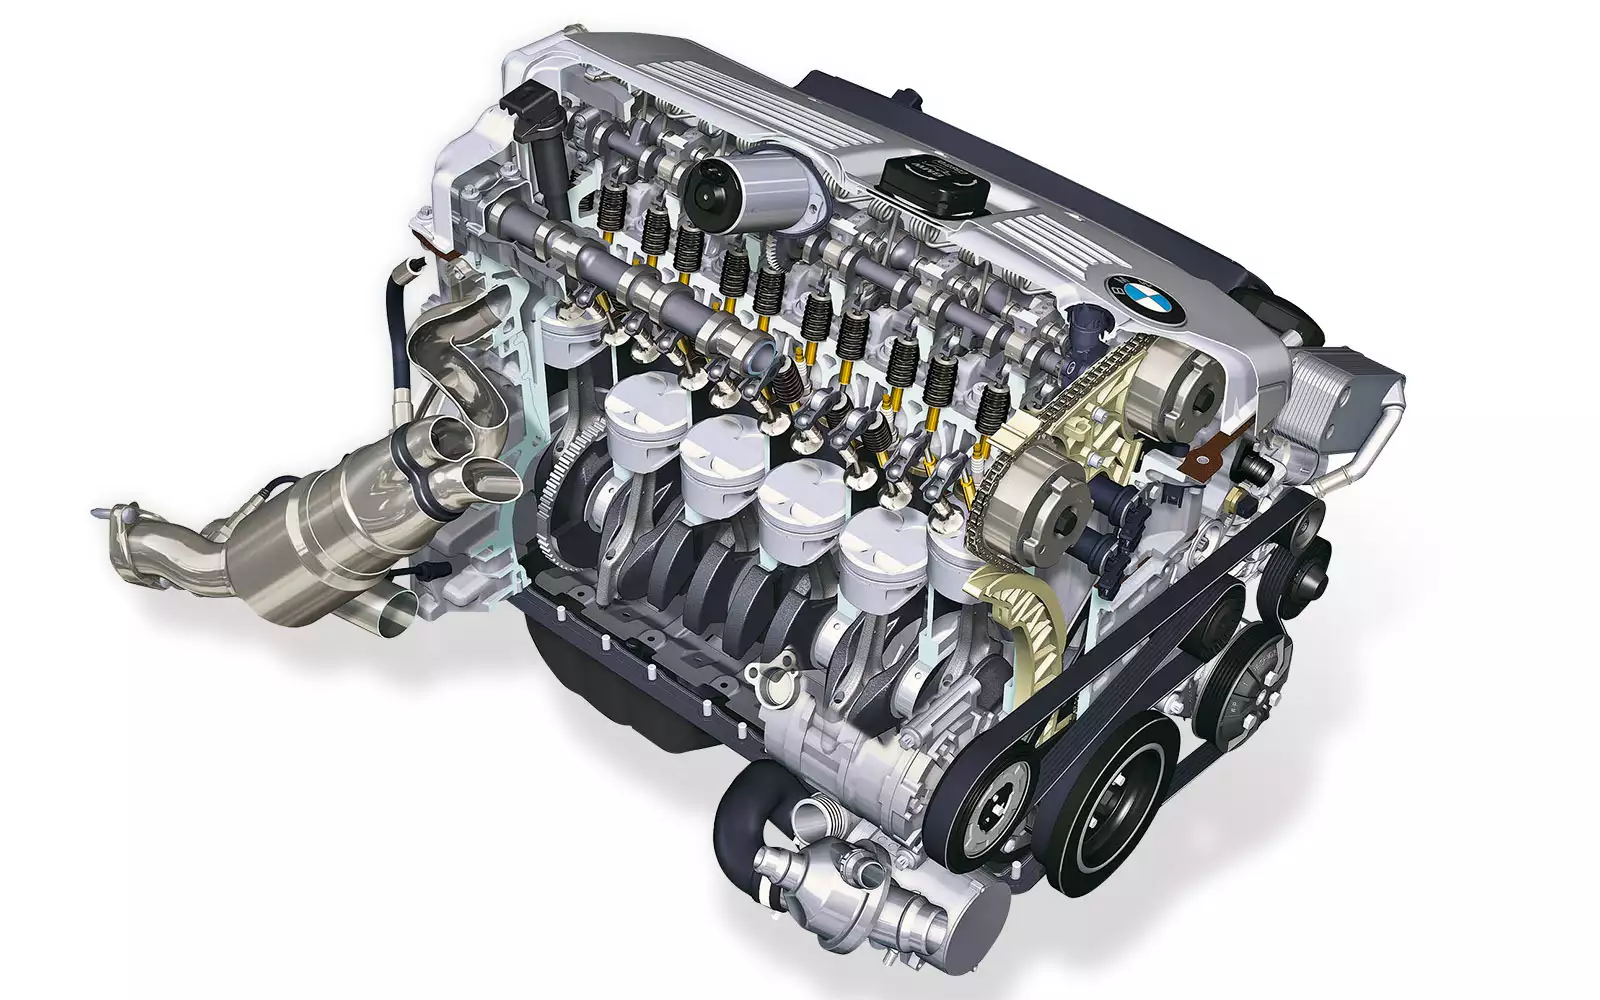 Рядная 4. BMW С мотором n53. N53 двигатель BMW. Двигатель n53 BMW цилиндры. N52 двигатель BMW 2.5 литра.